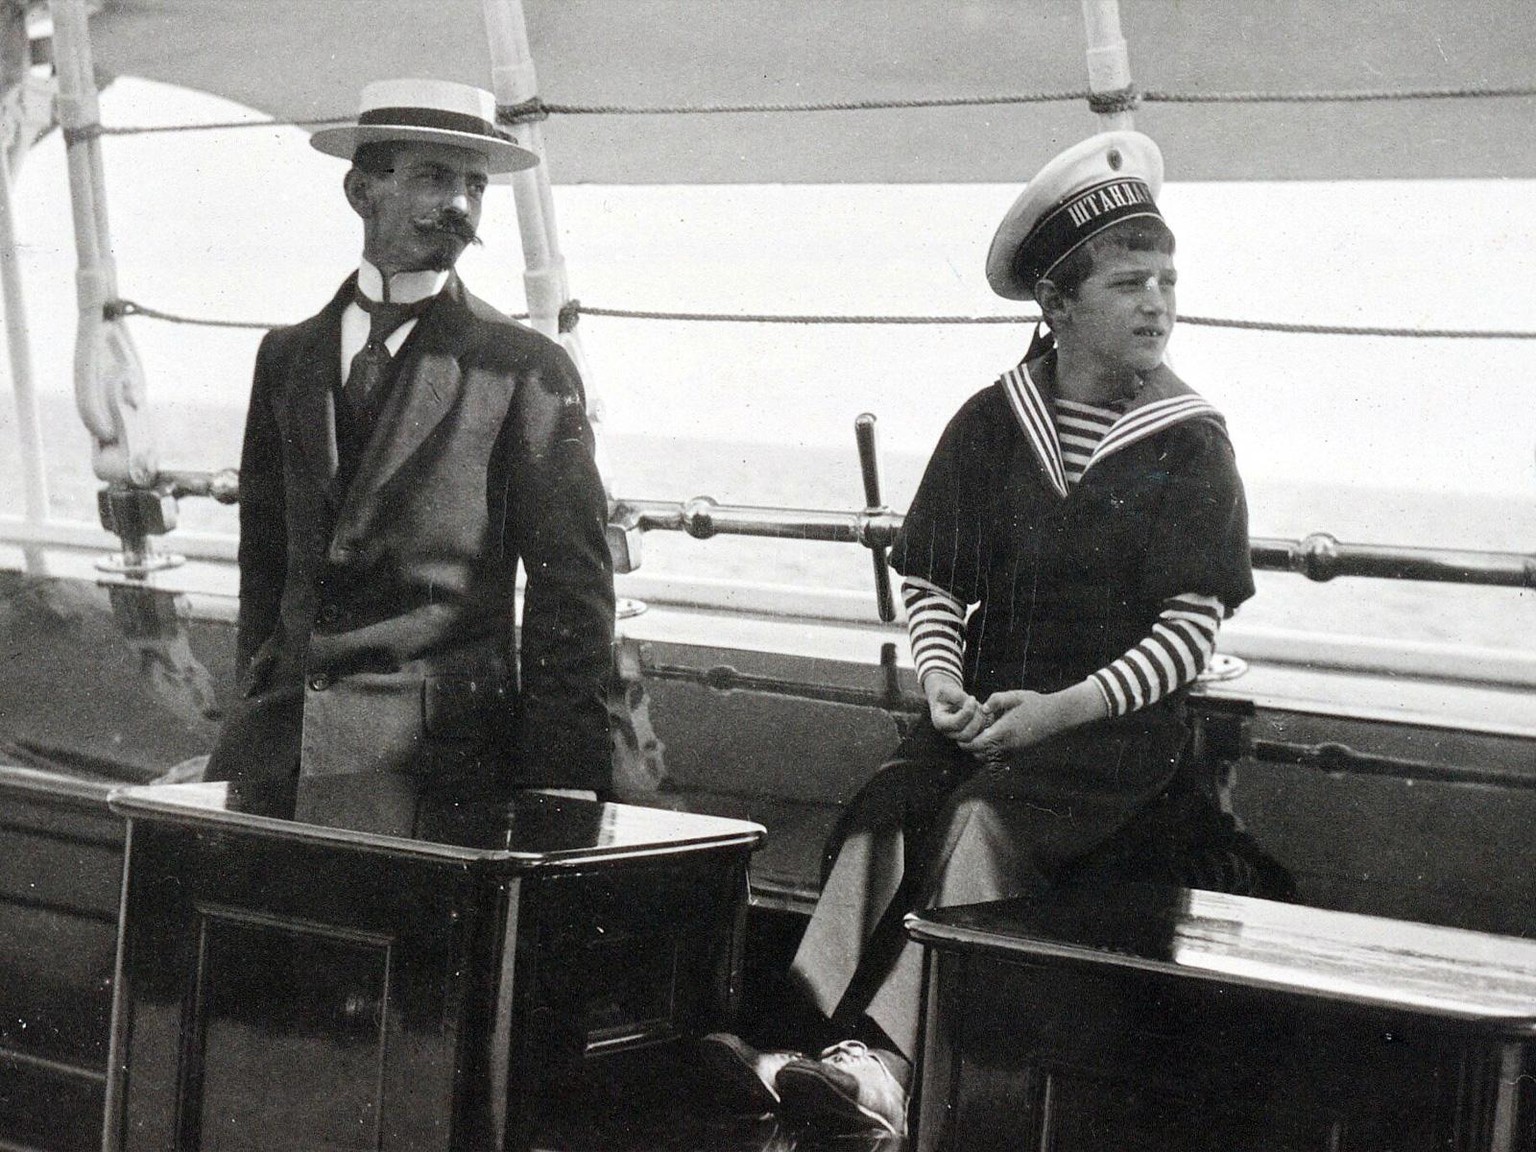 Pierre Gilliard und Zarewitsch Alexei an Bord der kaiserlichen Jacht «Standart».
https://de.wikipedia.org/wiki/Datei:Pierre_Gilliard_and_Alexei.jpg